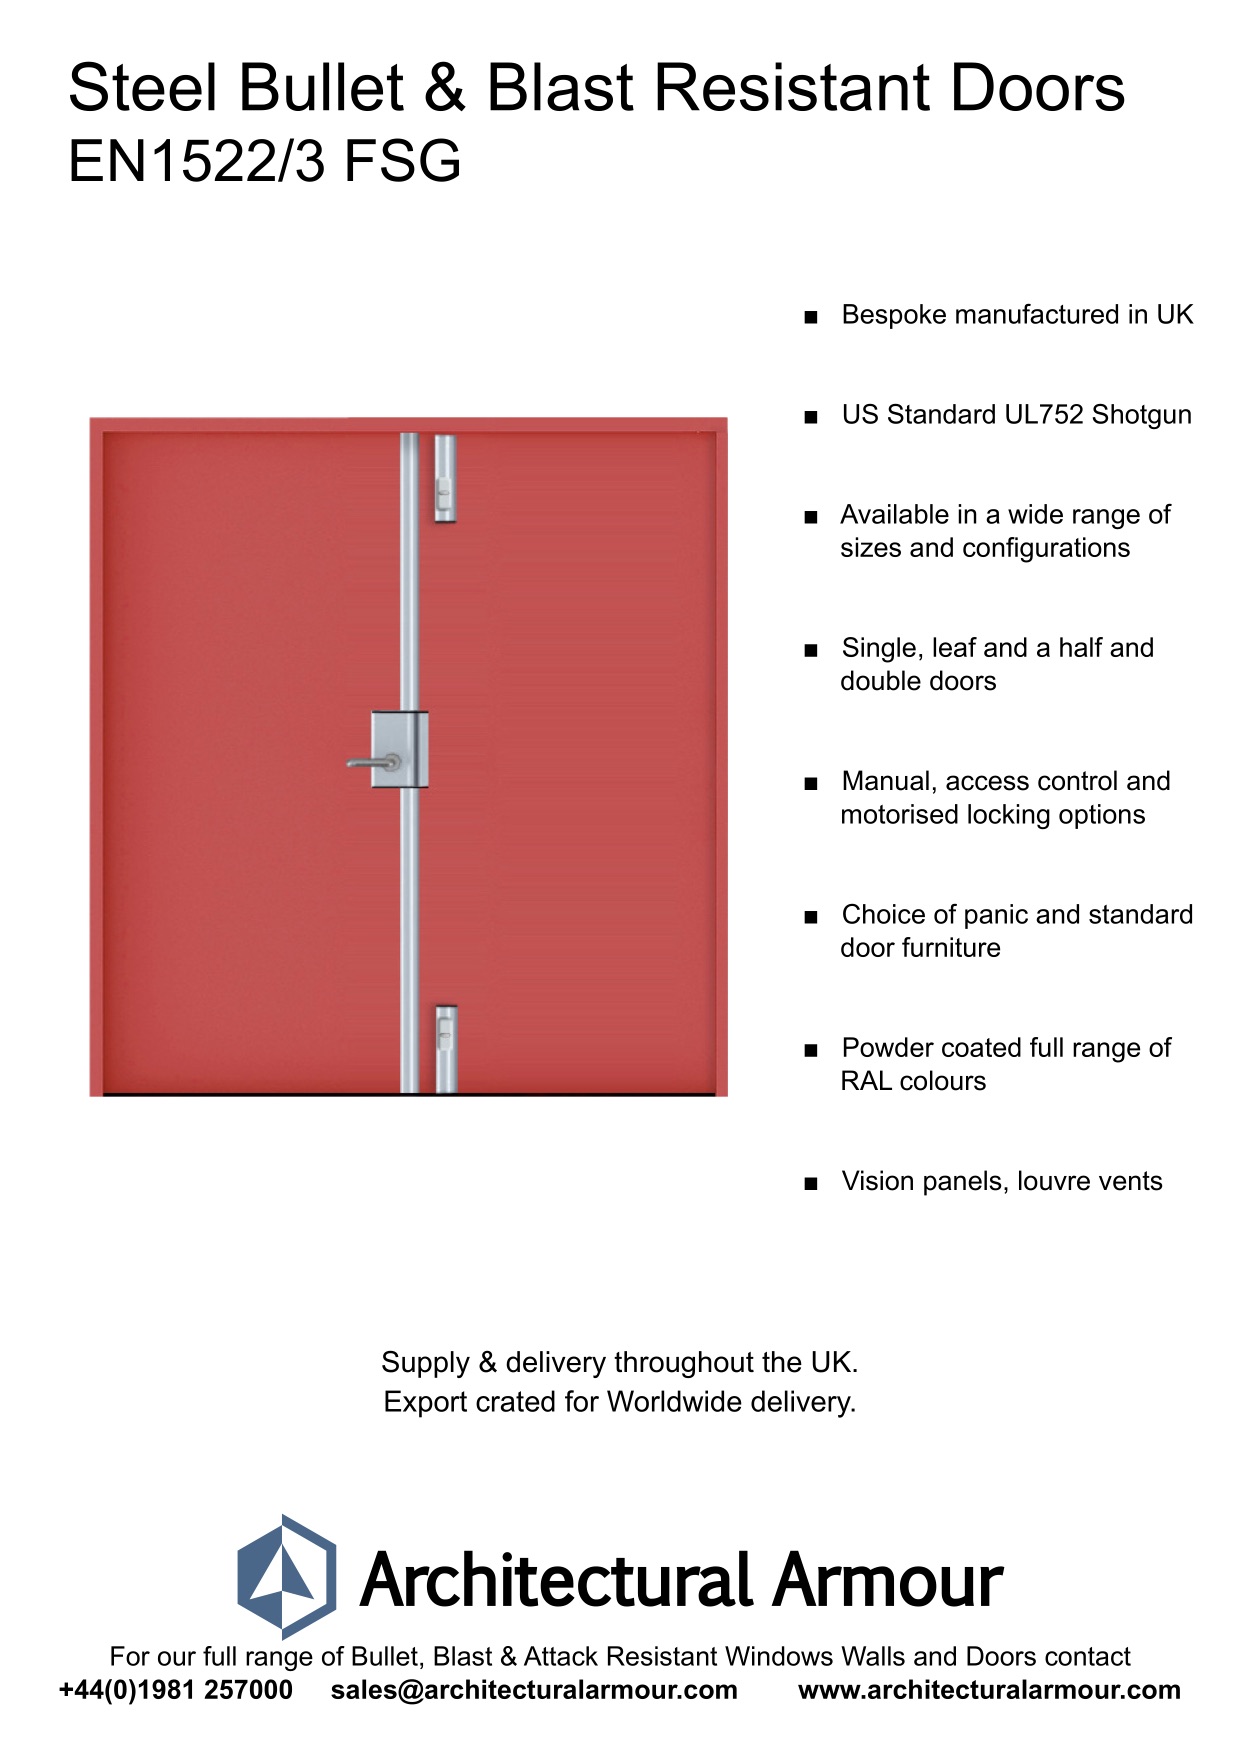 Blast-and-Bullet-Resistant-Steel-Double-Doors-EN1522-3-FSG